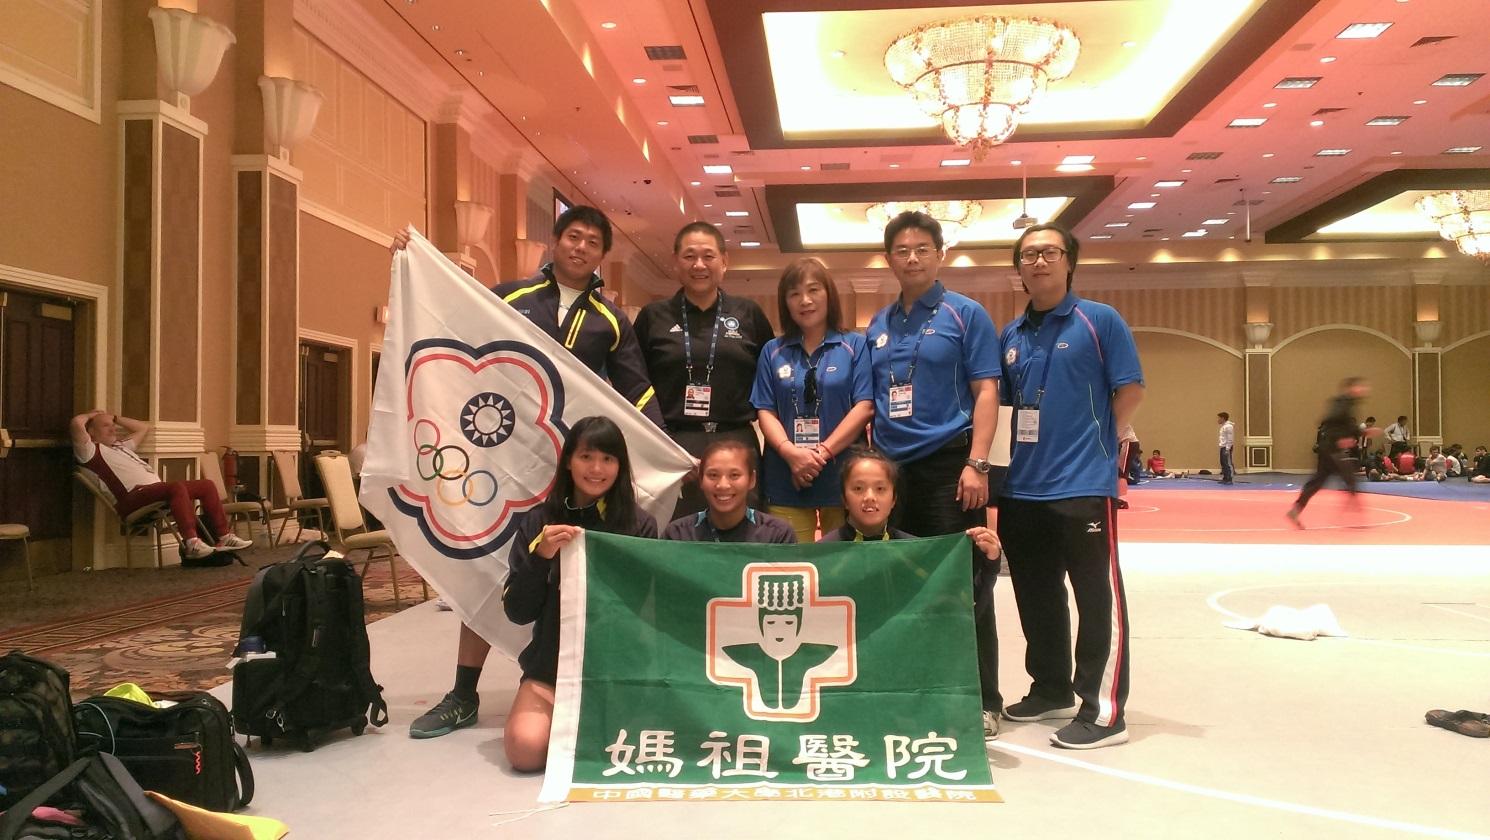 中華台北角力代表團於2015美國拉斯維加斯世界盃角力錦標賽合影。